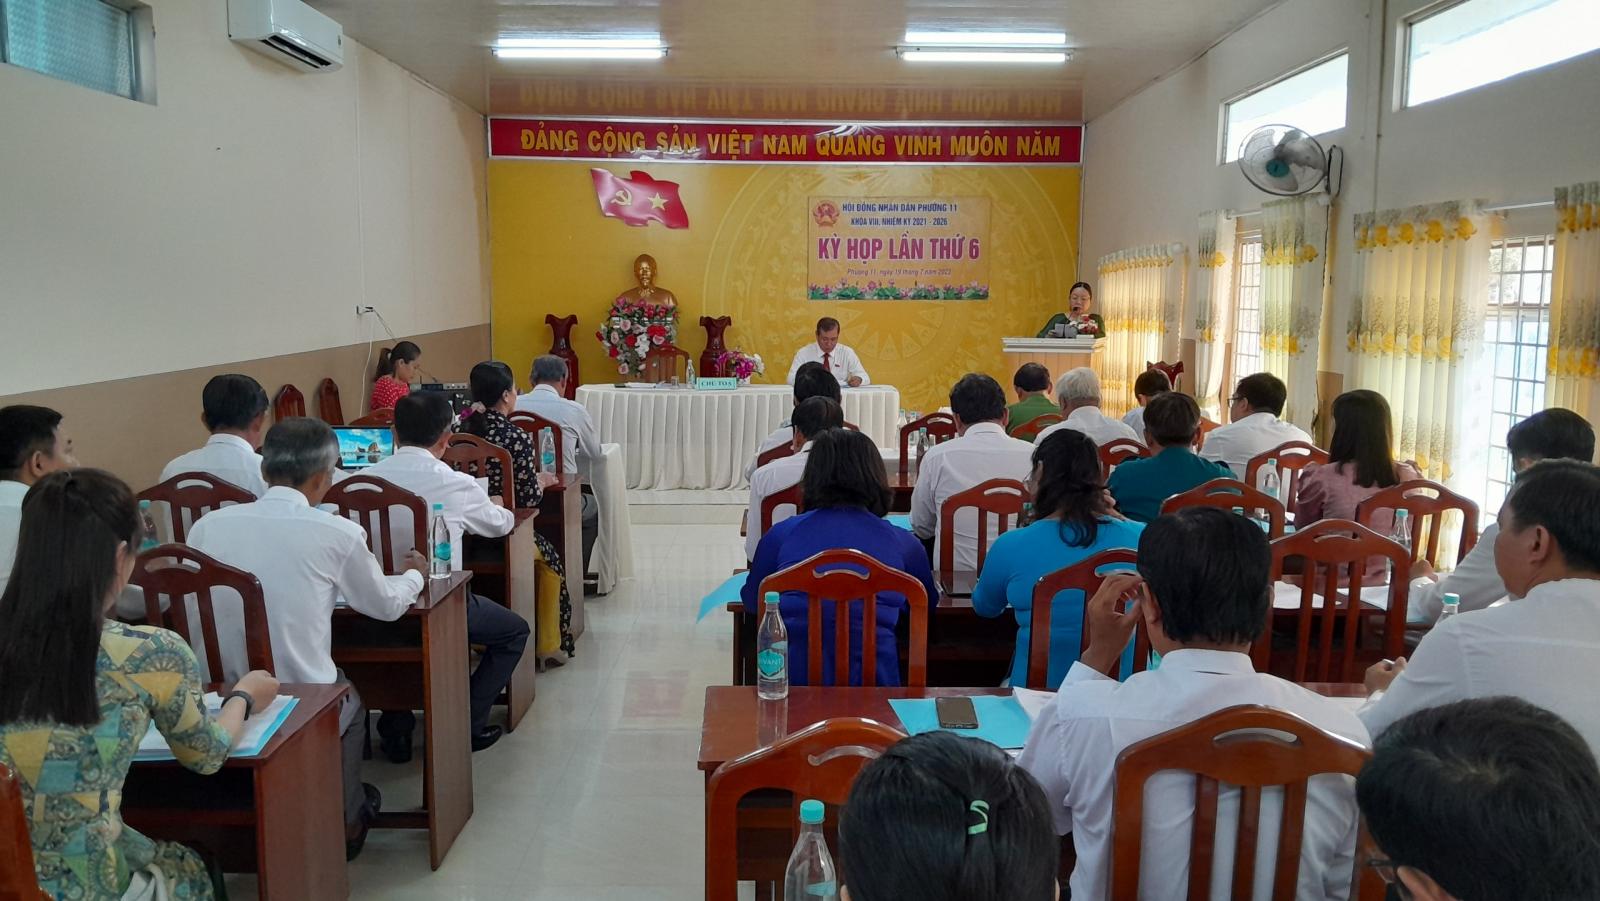 Hội đồng nhân dân Phường 11 tổ chức kỳ họp lấn thứ 6